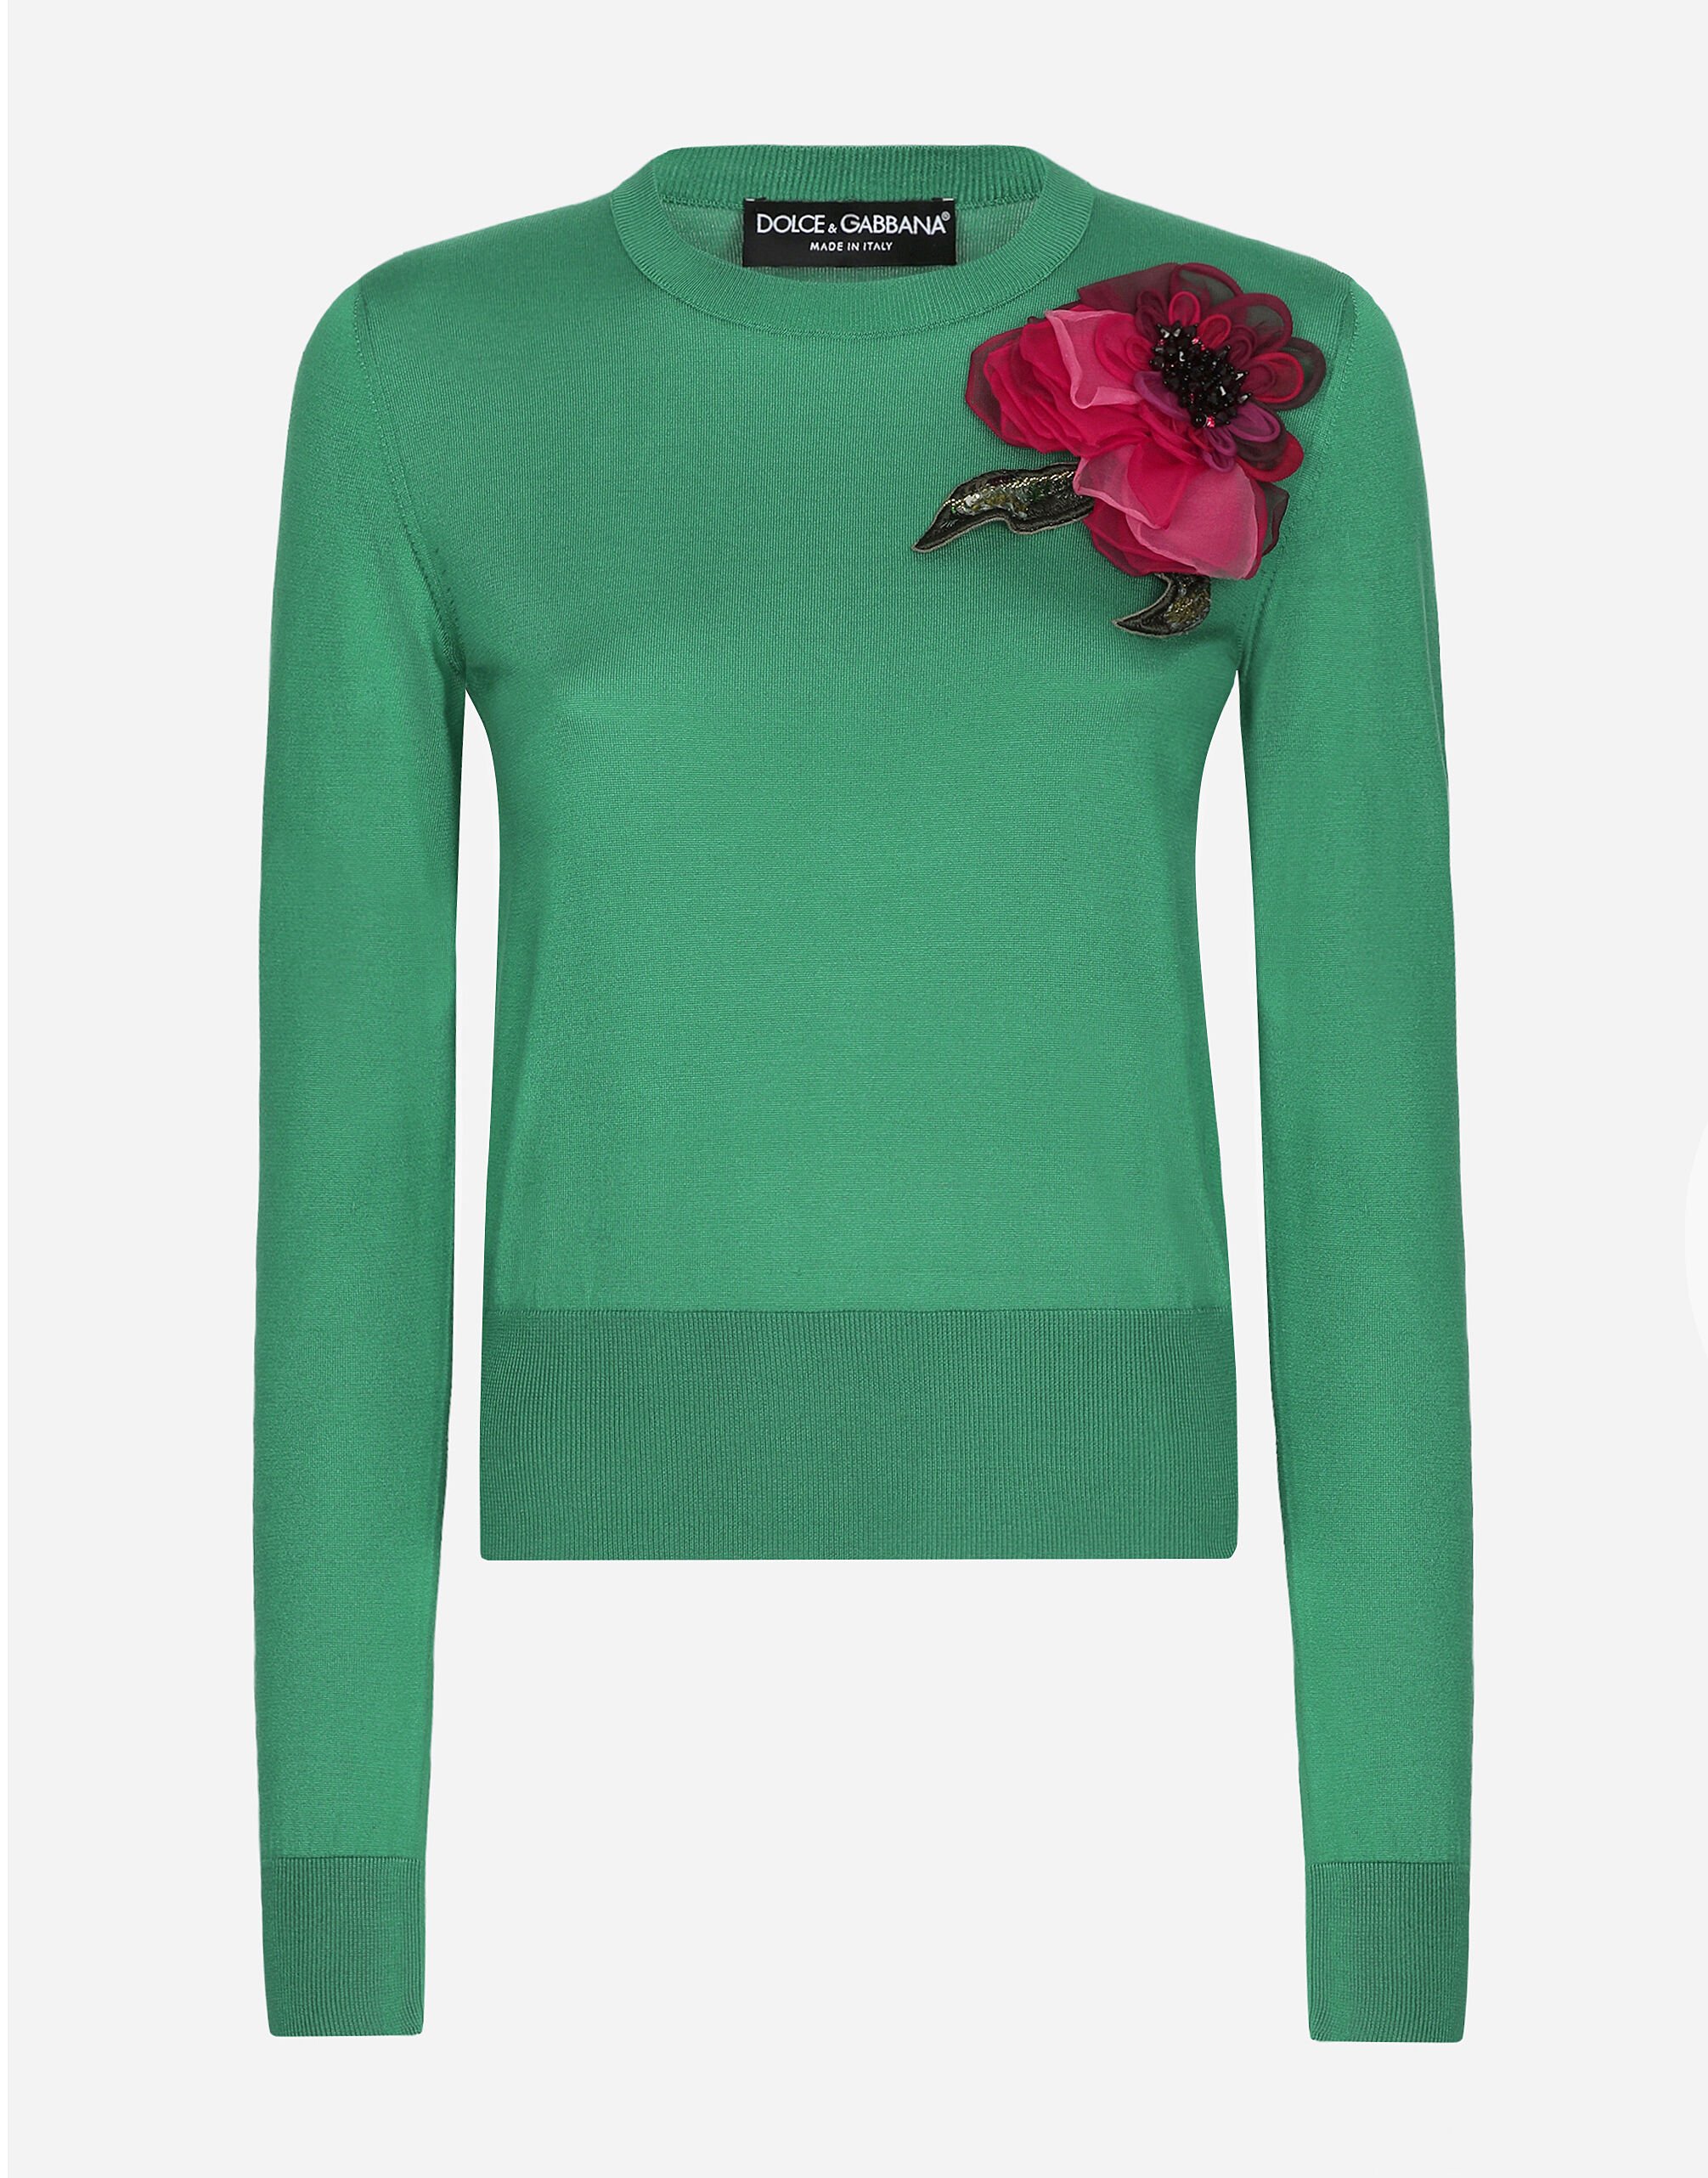 Dolce & Gabbana Pull en soie avec application fleur Rose FXV07ZJBSHX